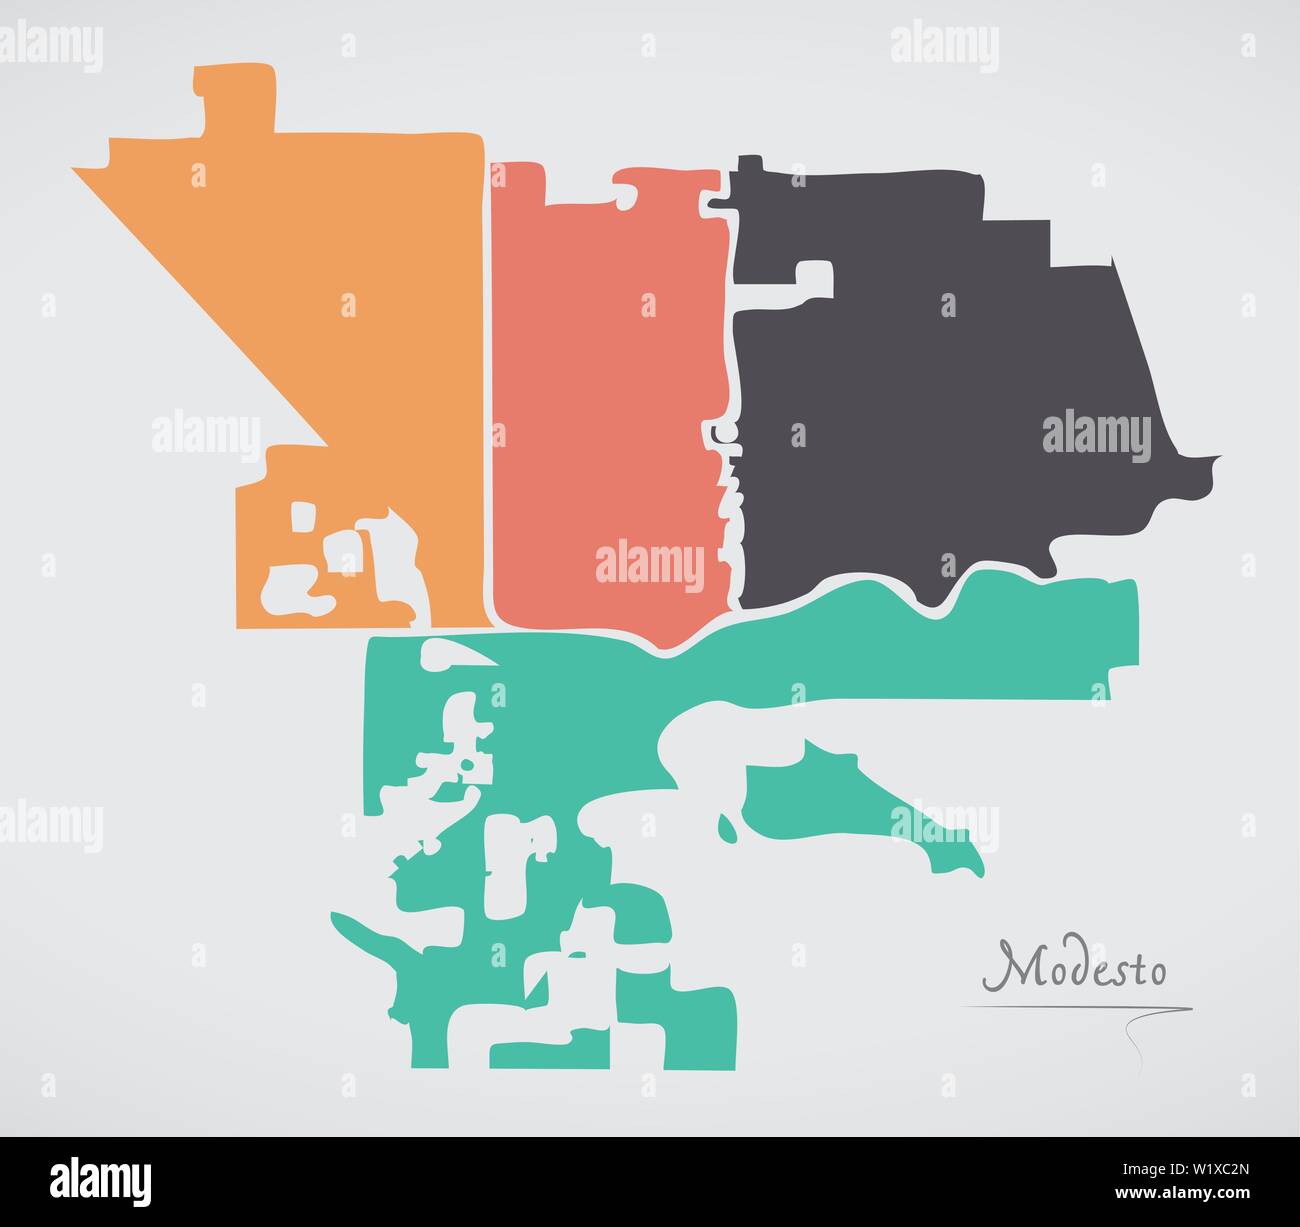 Modesto Californie Plan avec les quartiers et les formes rondes modernes Illustration de Vecteur